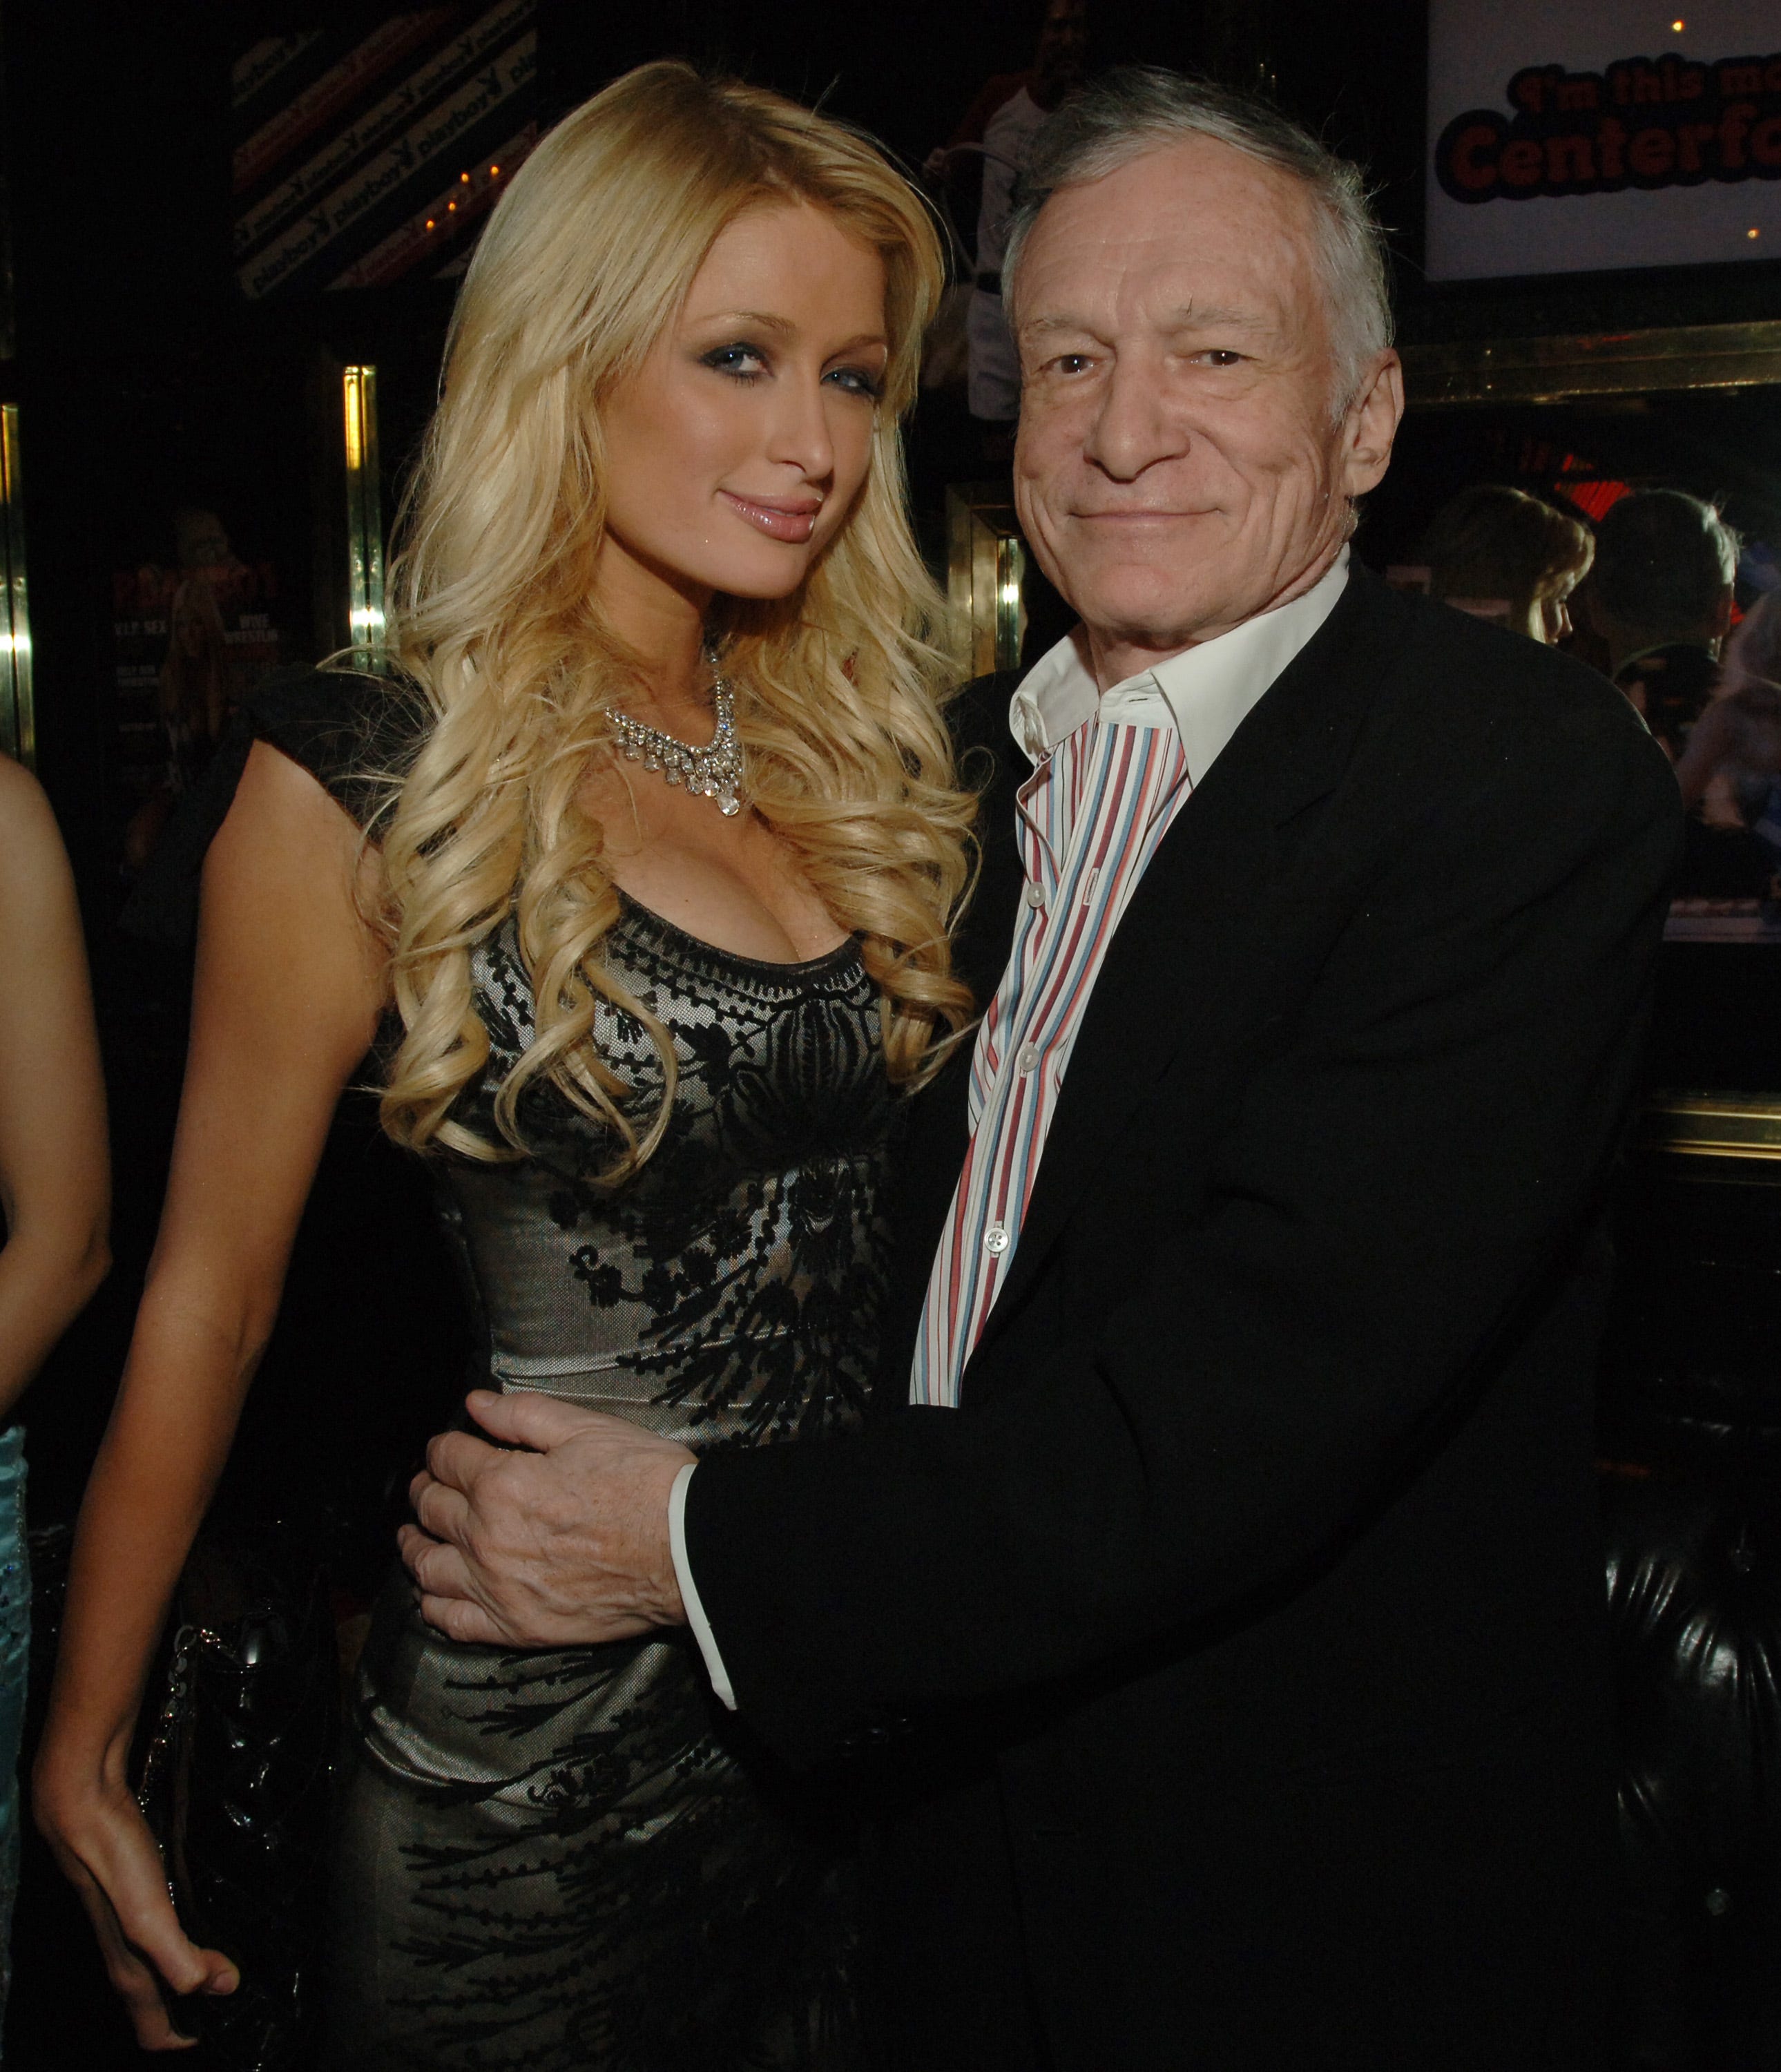 Paris Hilton und Hugh Hefner bei der 81. Geburtstagsfeier des Playboy-Gründers im Jahr 2007.